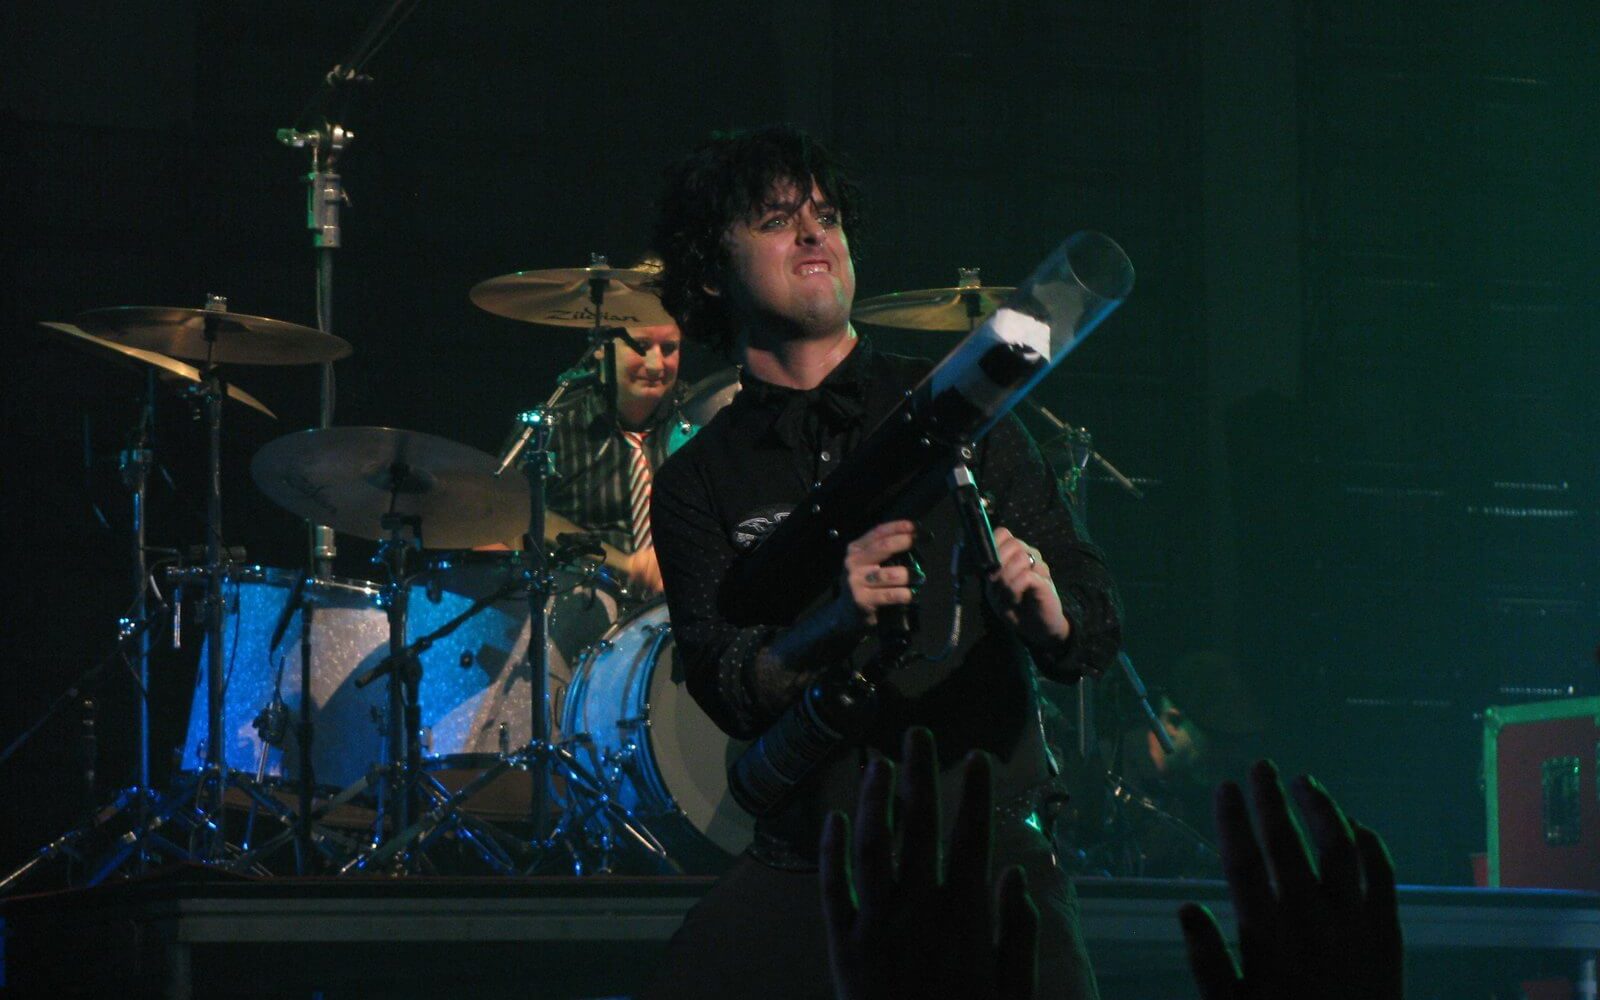 Enérgico concierto de Green Day, con su característico sonido punk rock y su atractiva presencia en el escenario